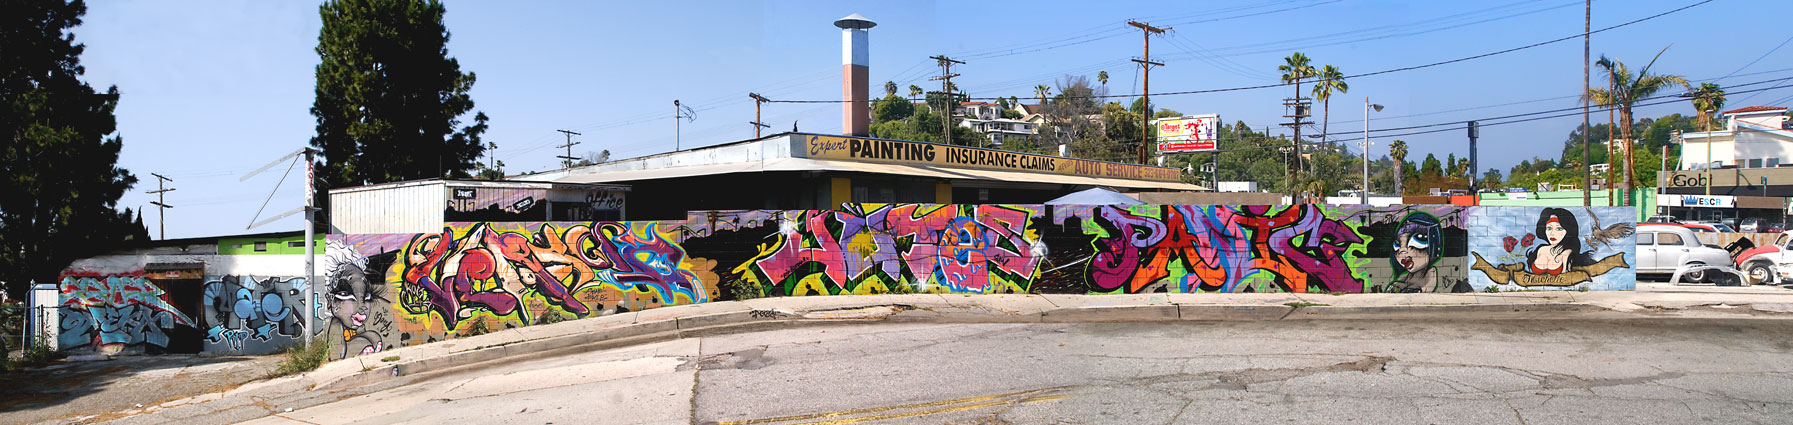 Elliott Place, Los Angeles, 2011